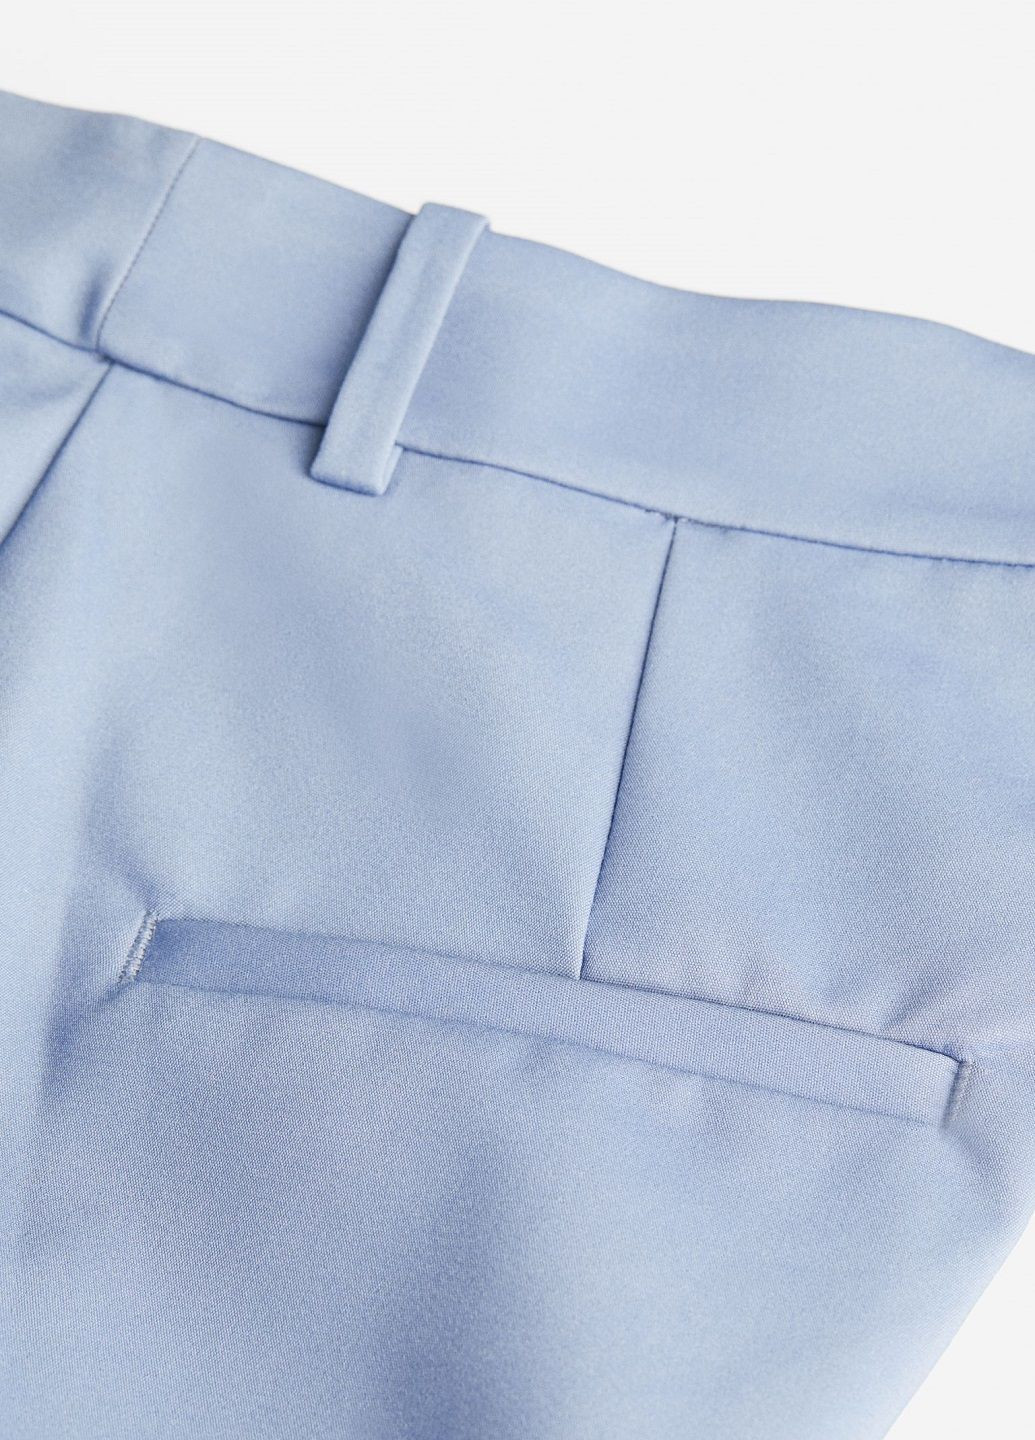 Синие классические демисезонные брюки H&M